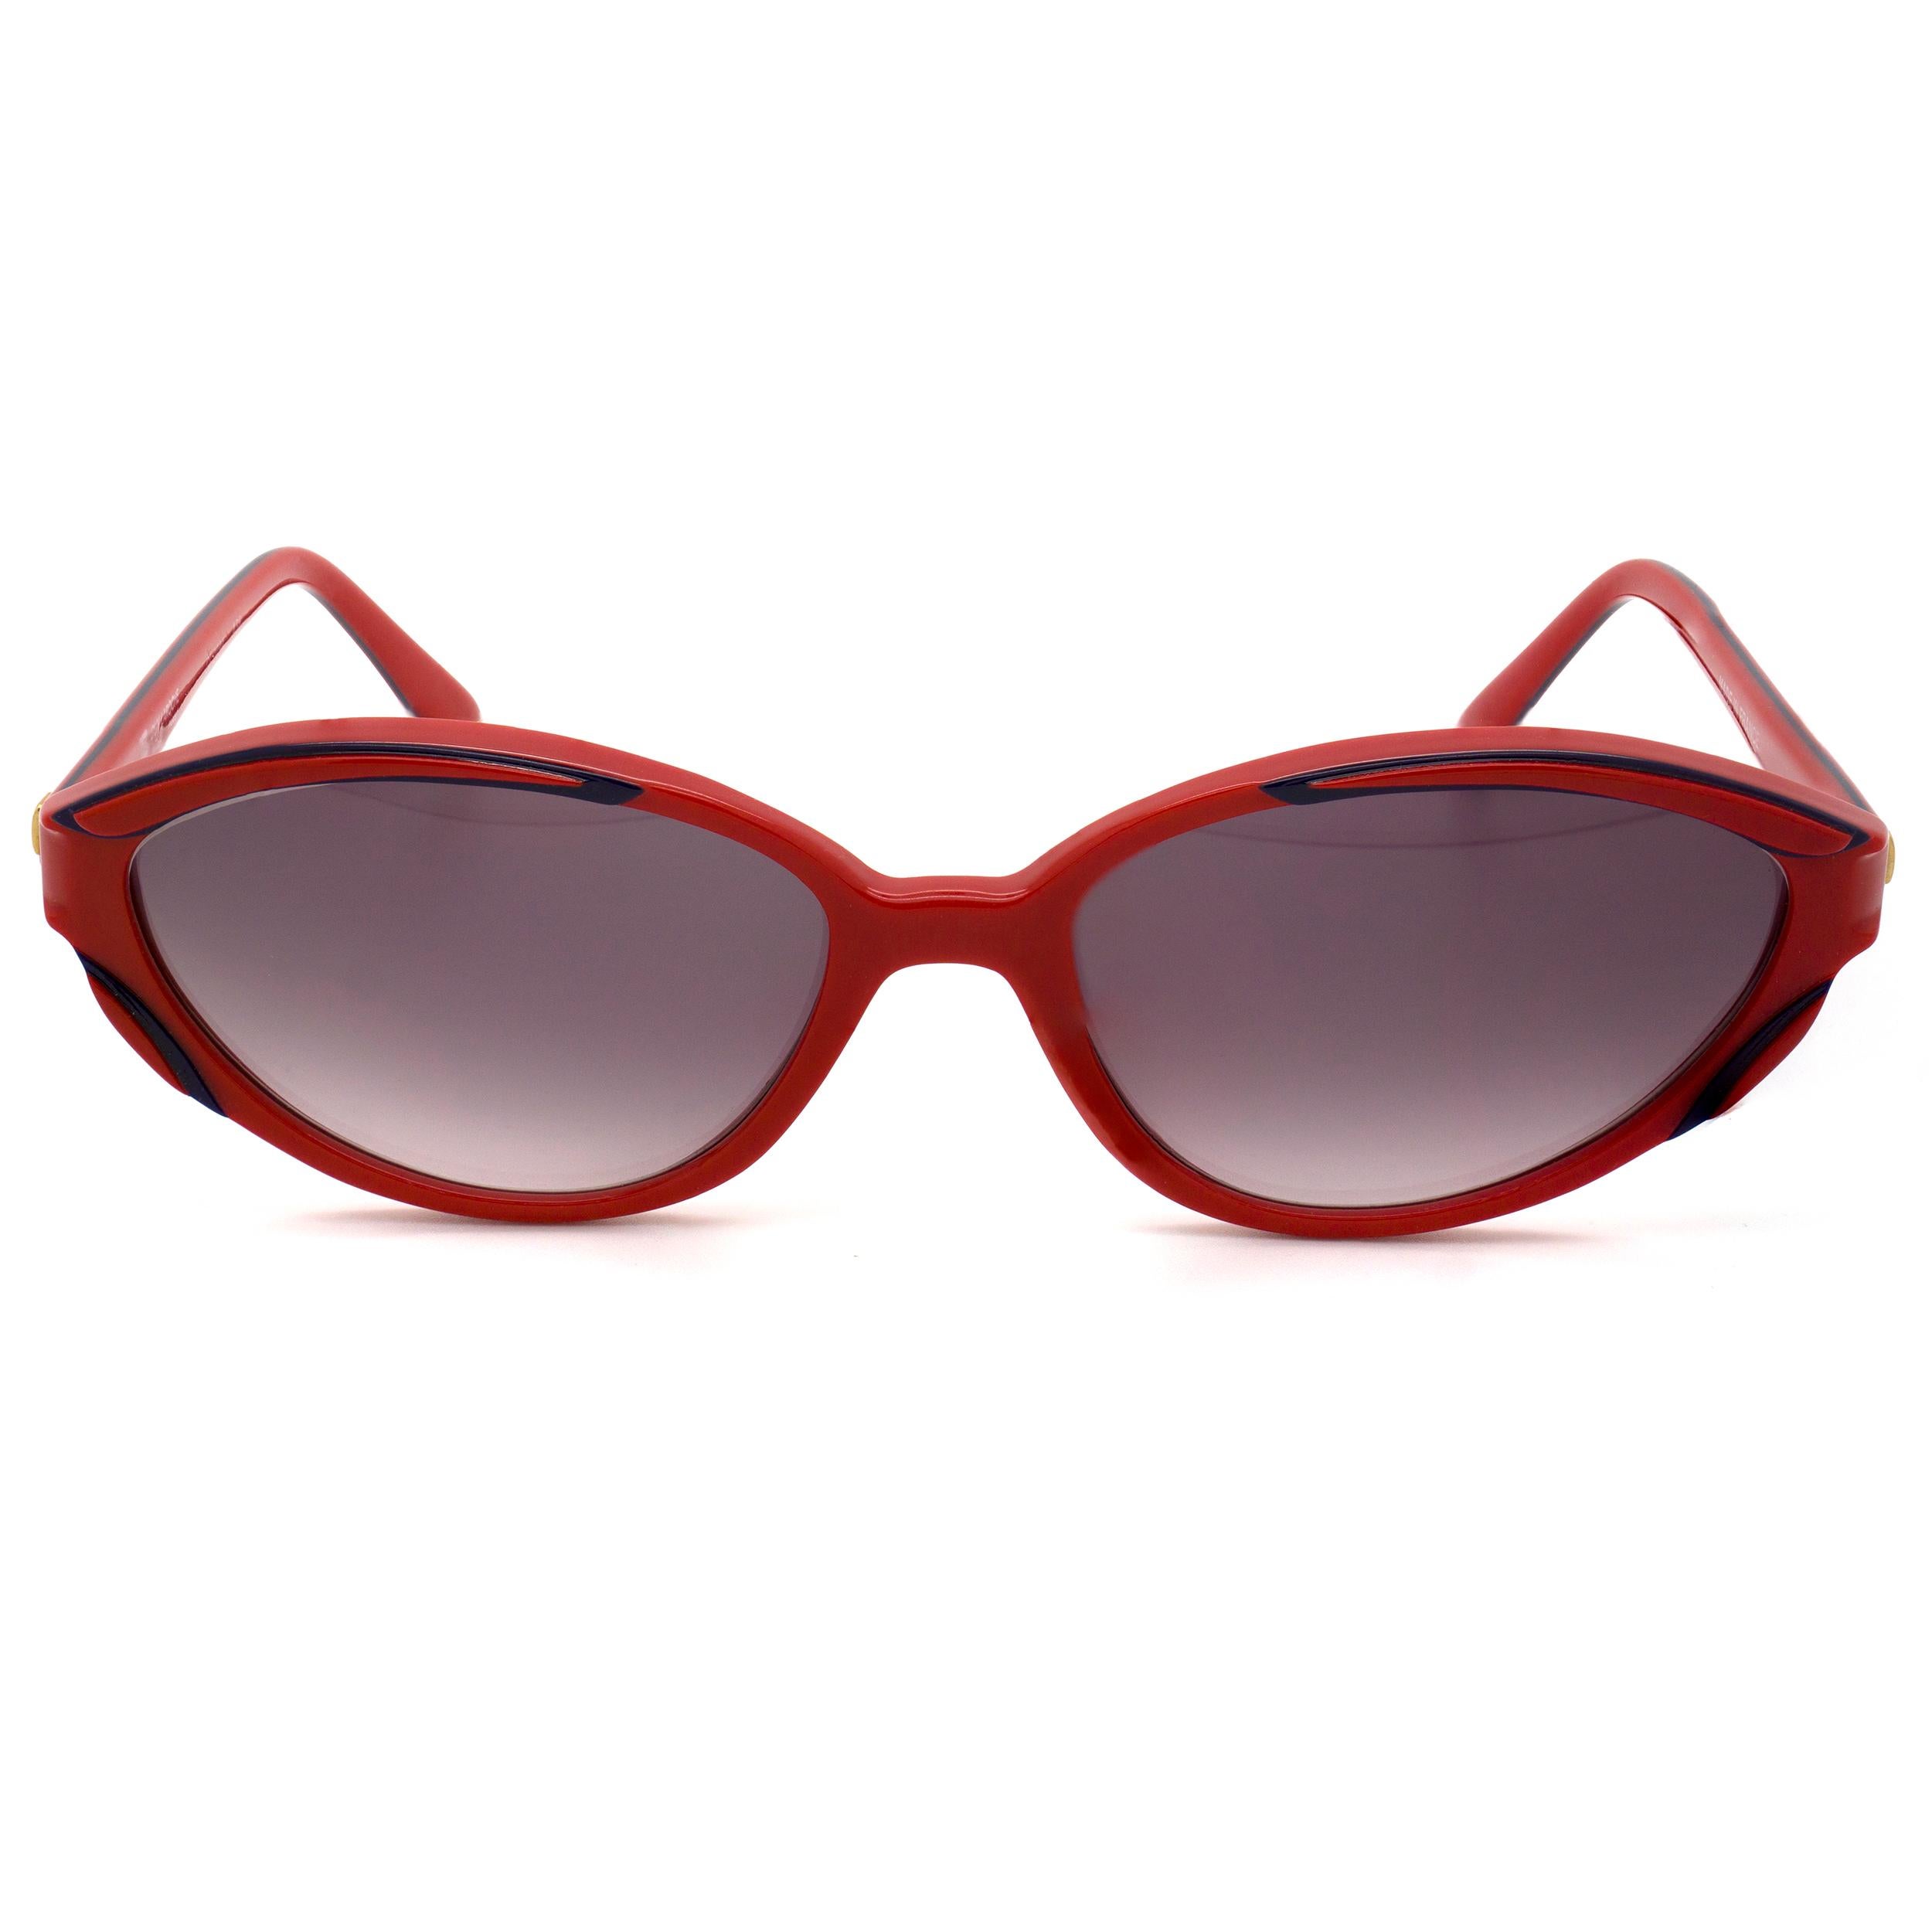 red cat eye glasses